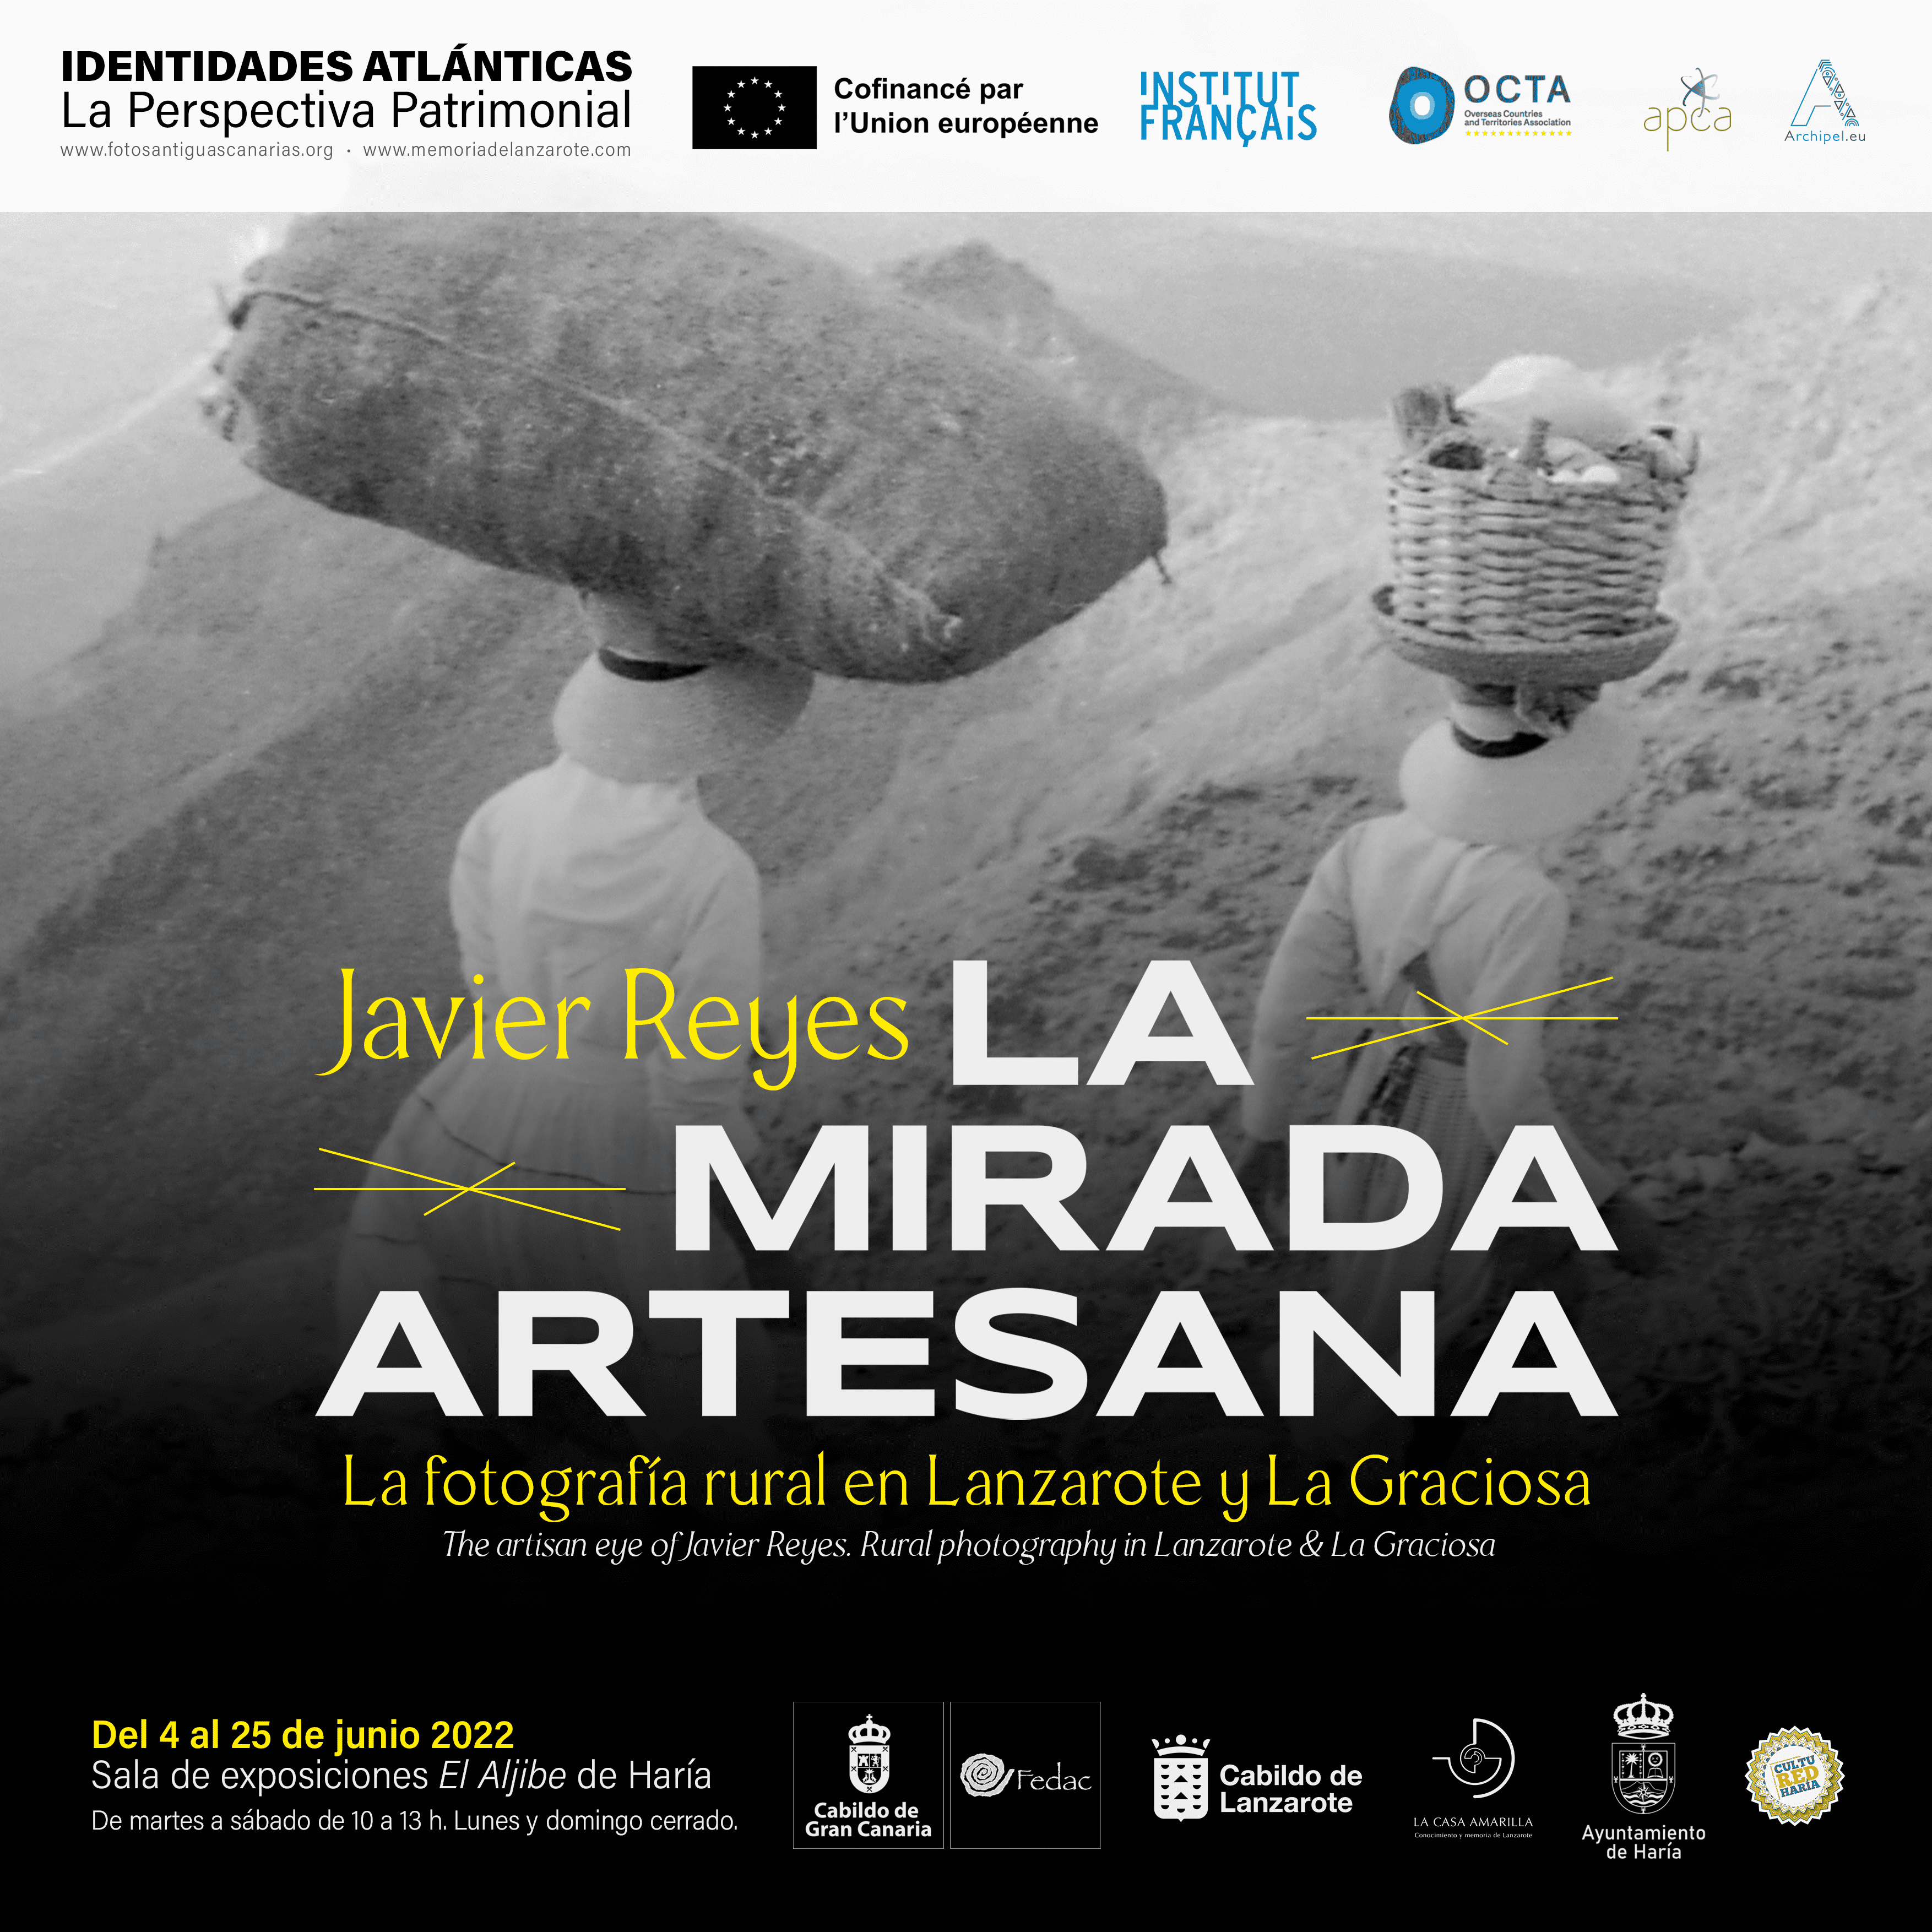 La exposición 'Javier Reyes. La mirada artesana' en Haría